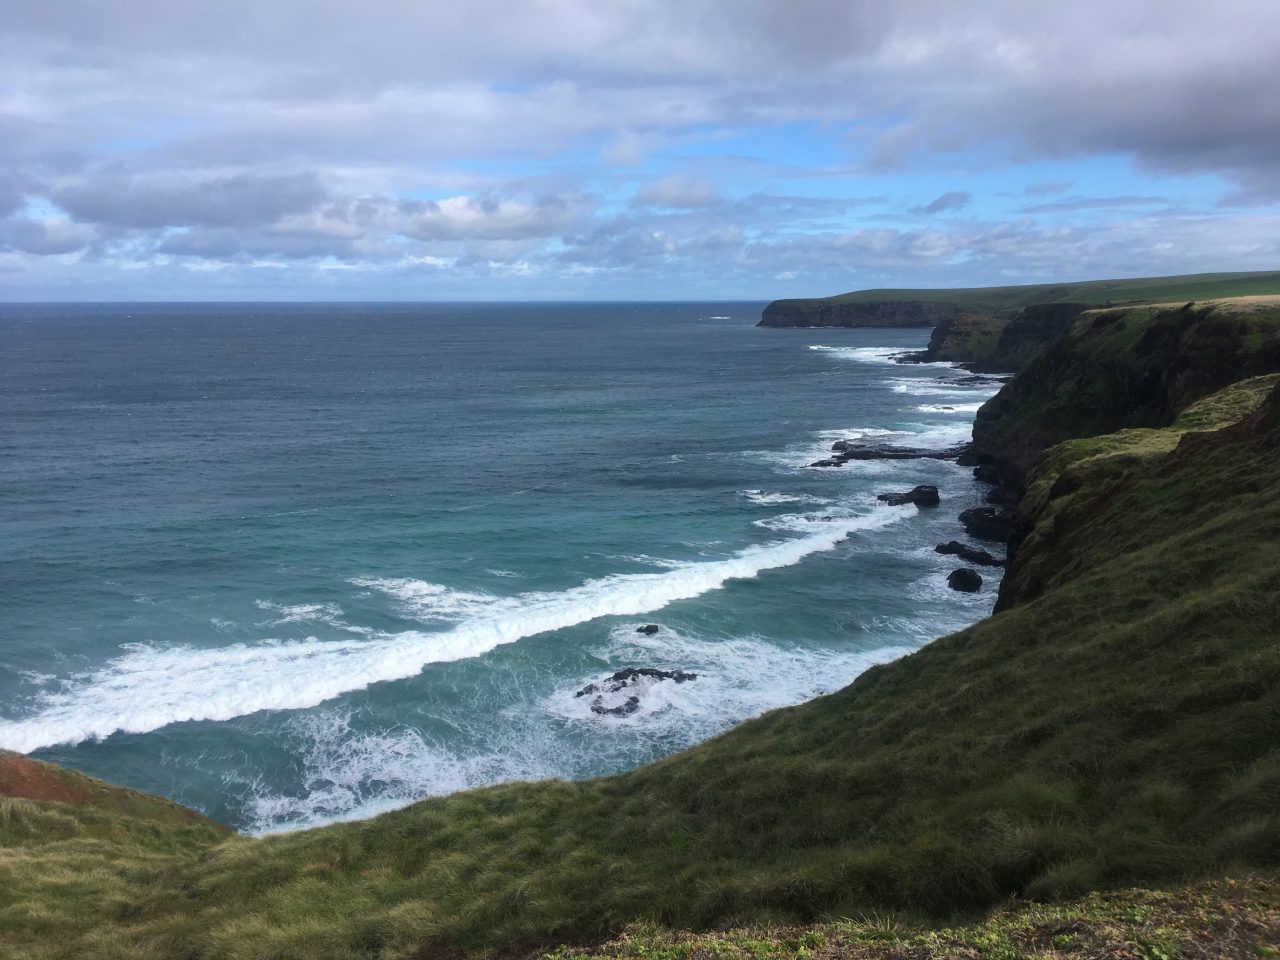 Green cliffs beside the ocean